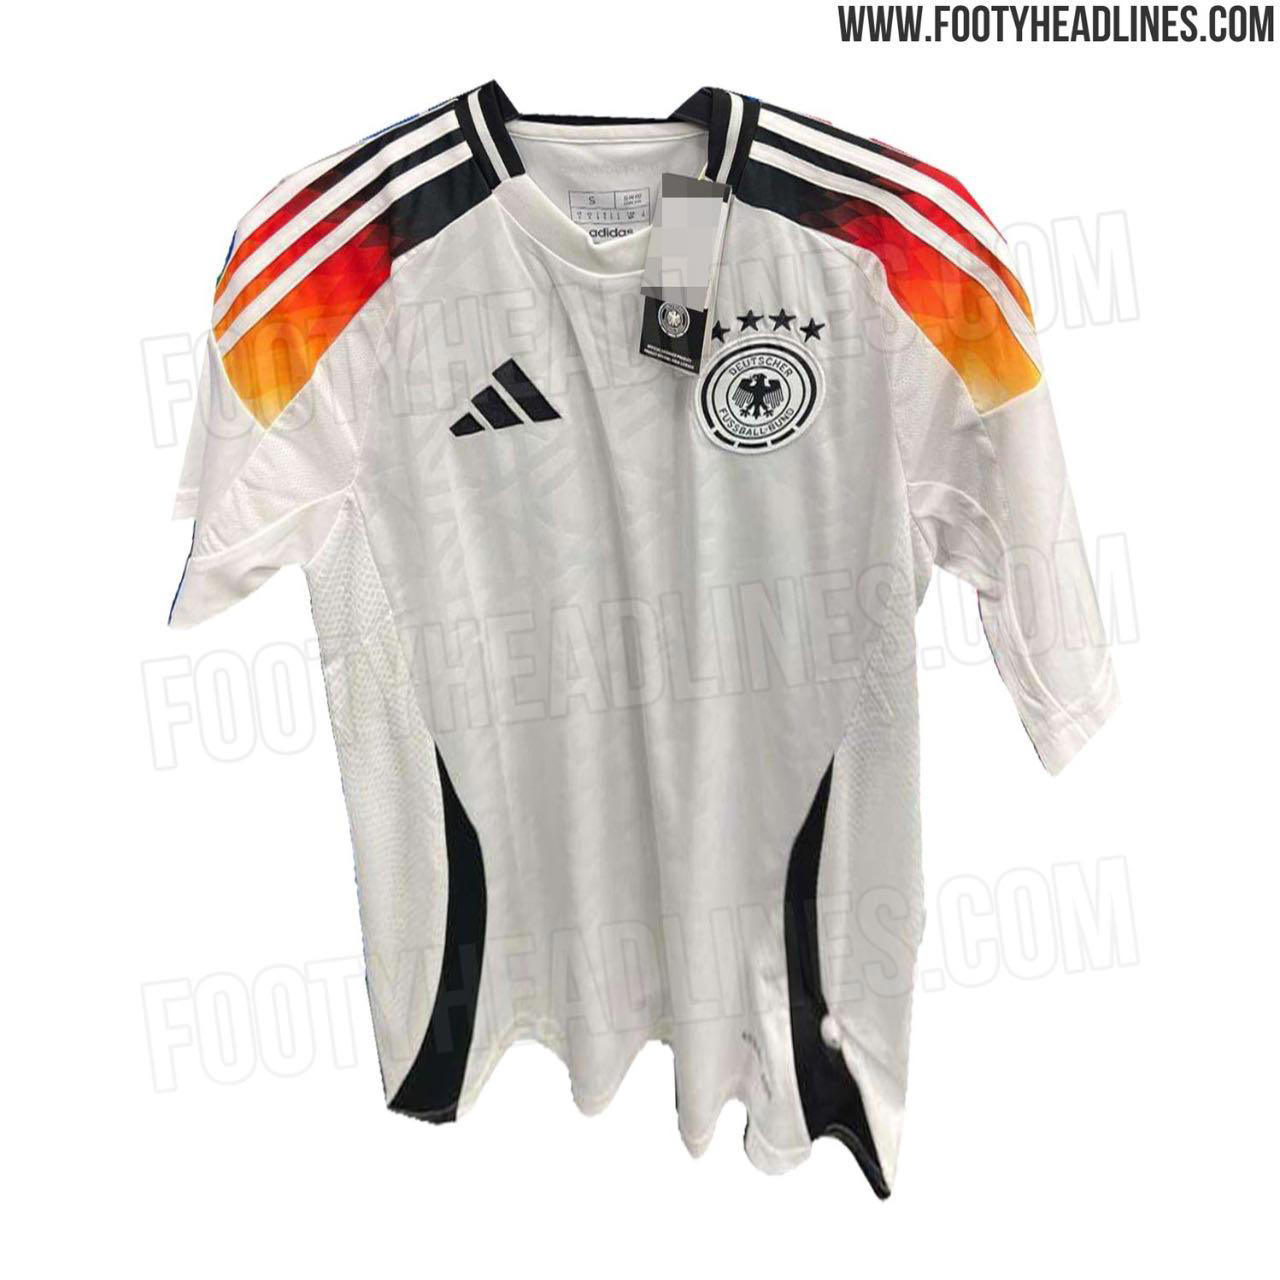 德国队欧洲杯主客场球衣真实照片曝光